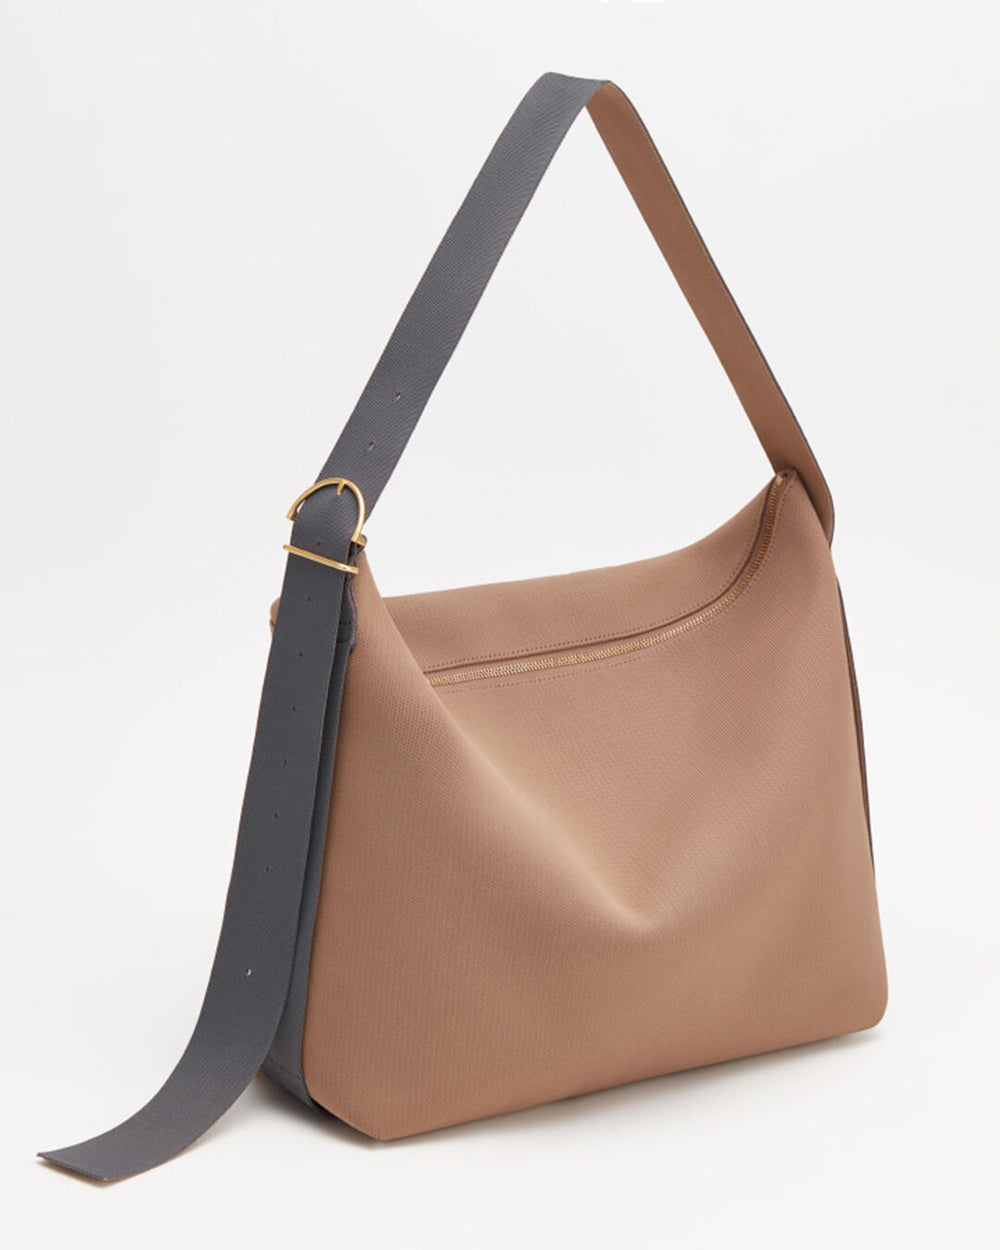 Handbag with a shoulder strap standing upright